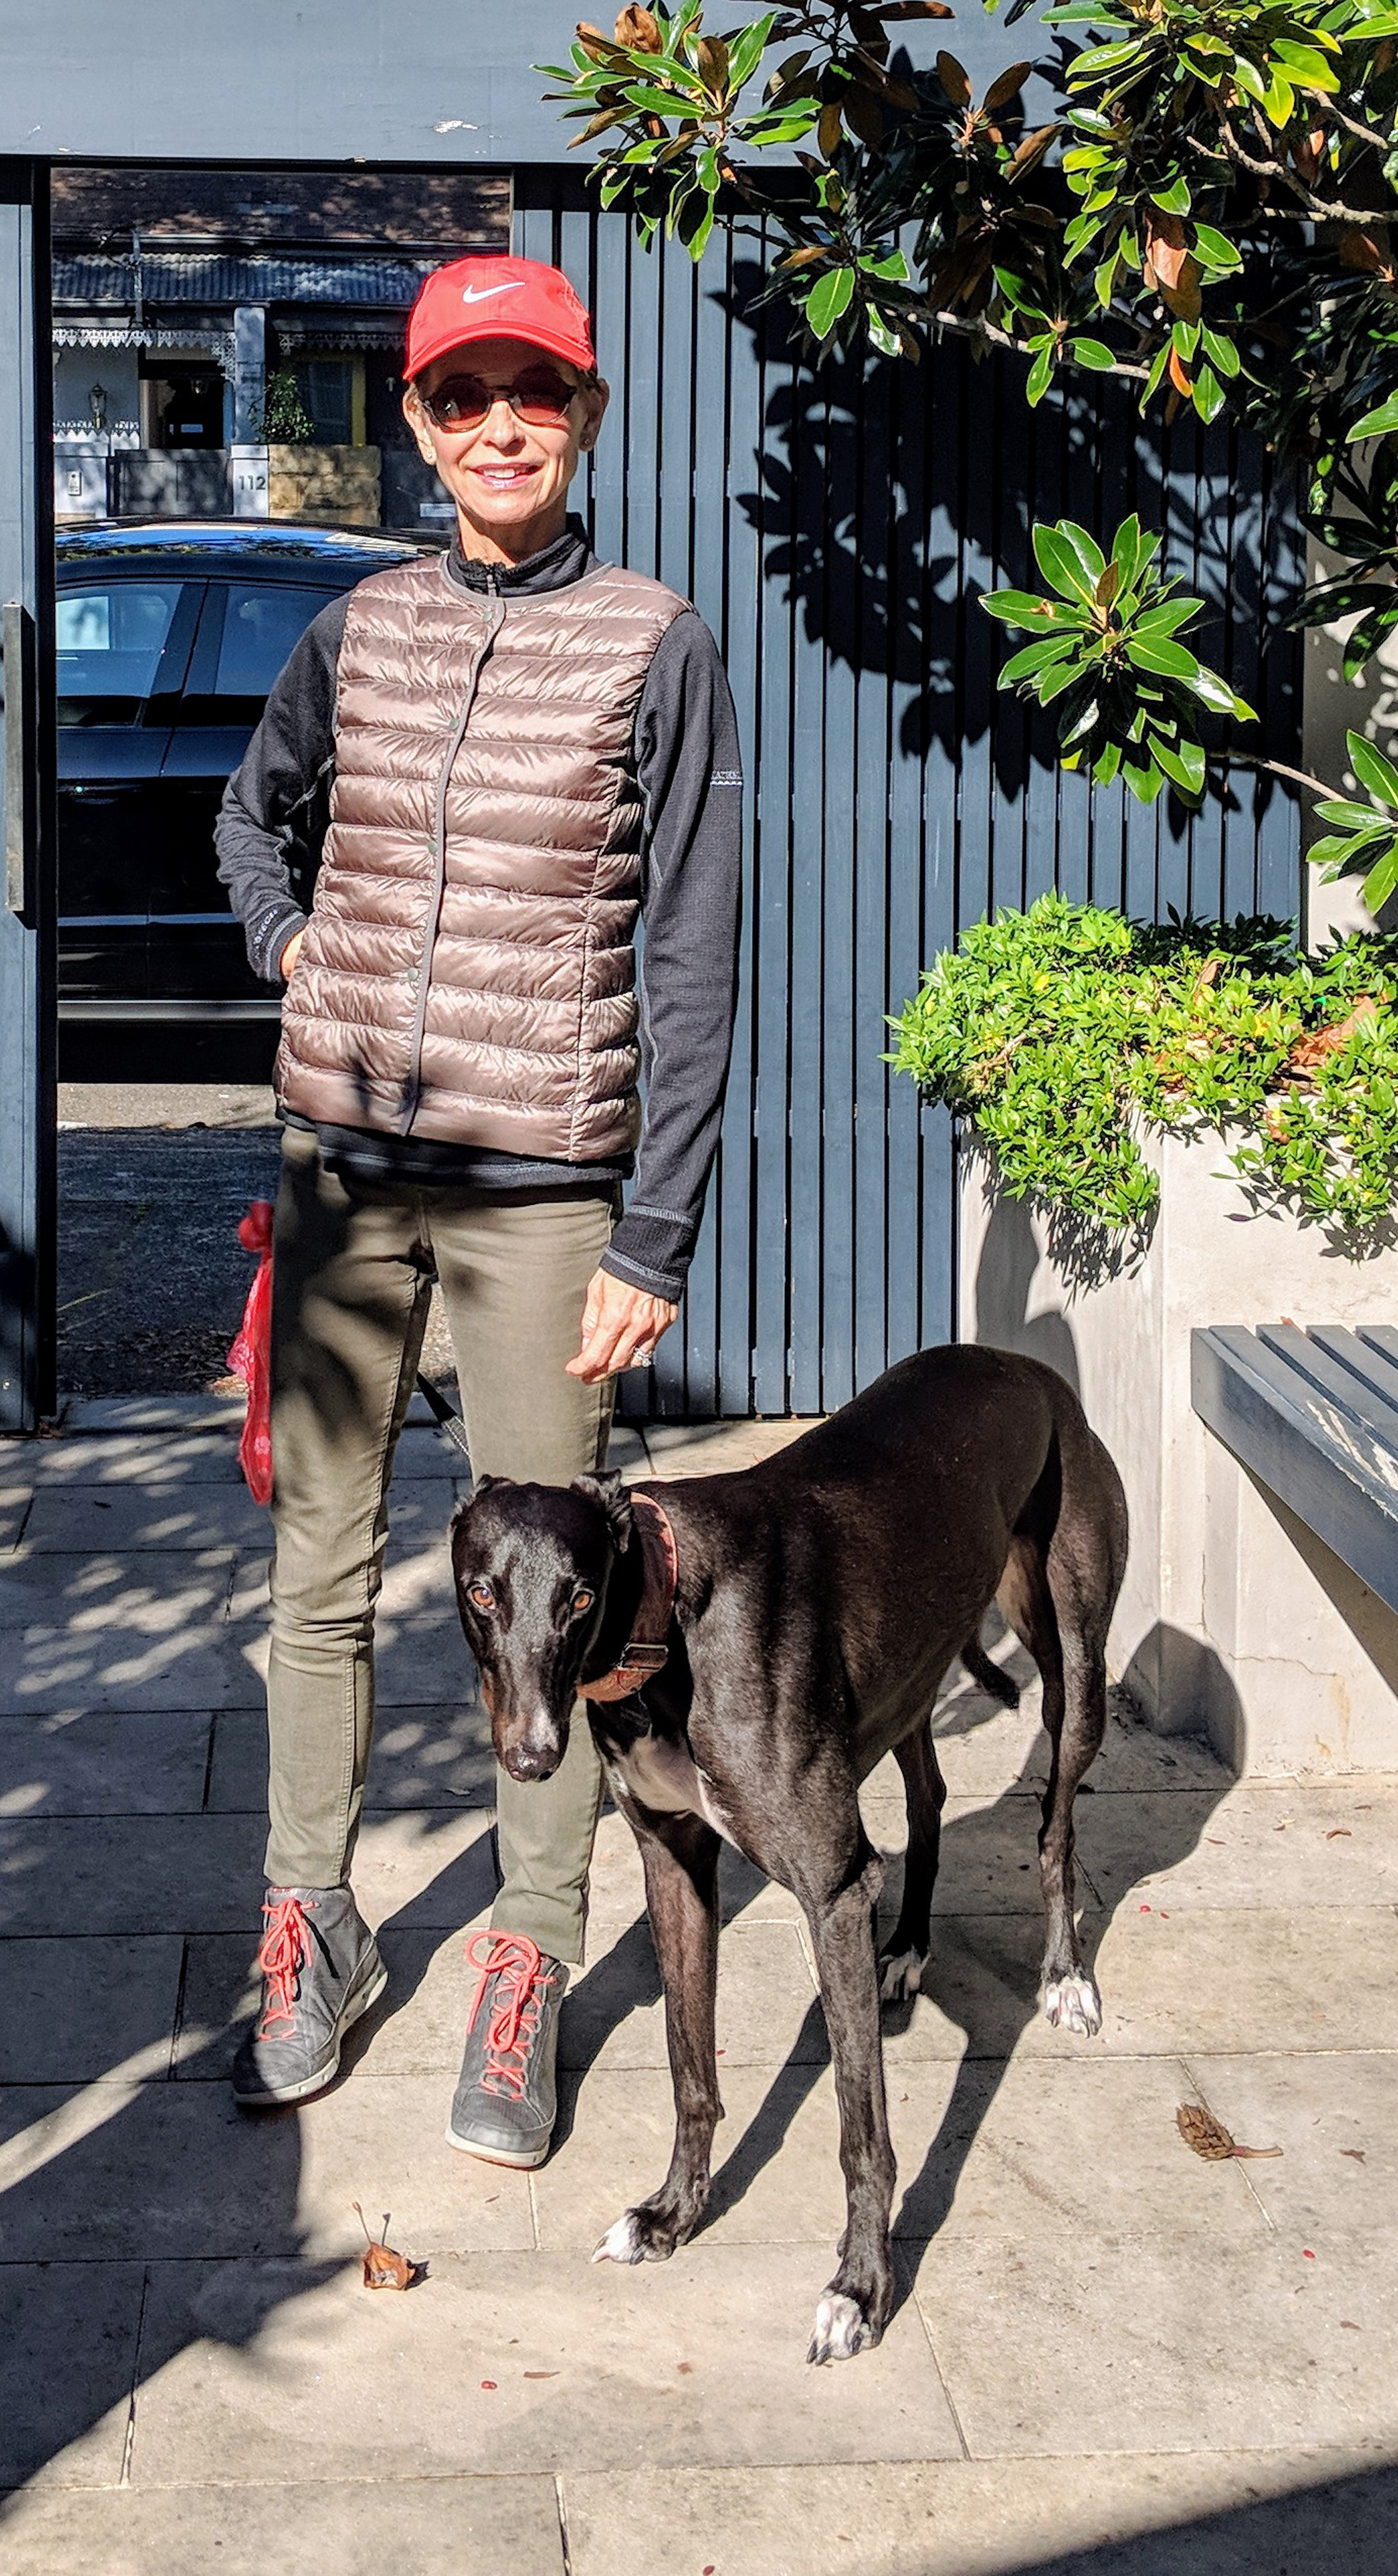 Regina-with-greyhound-Luna-ready-for-walk.jpg#asset:48762